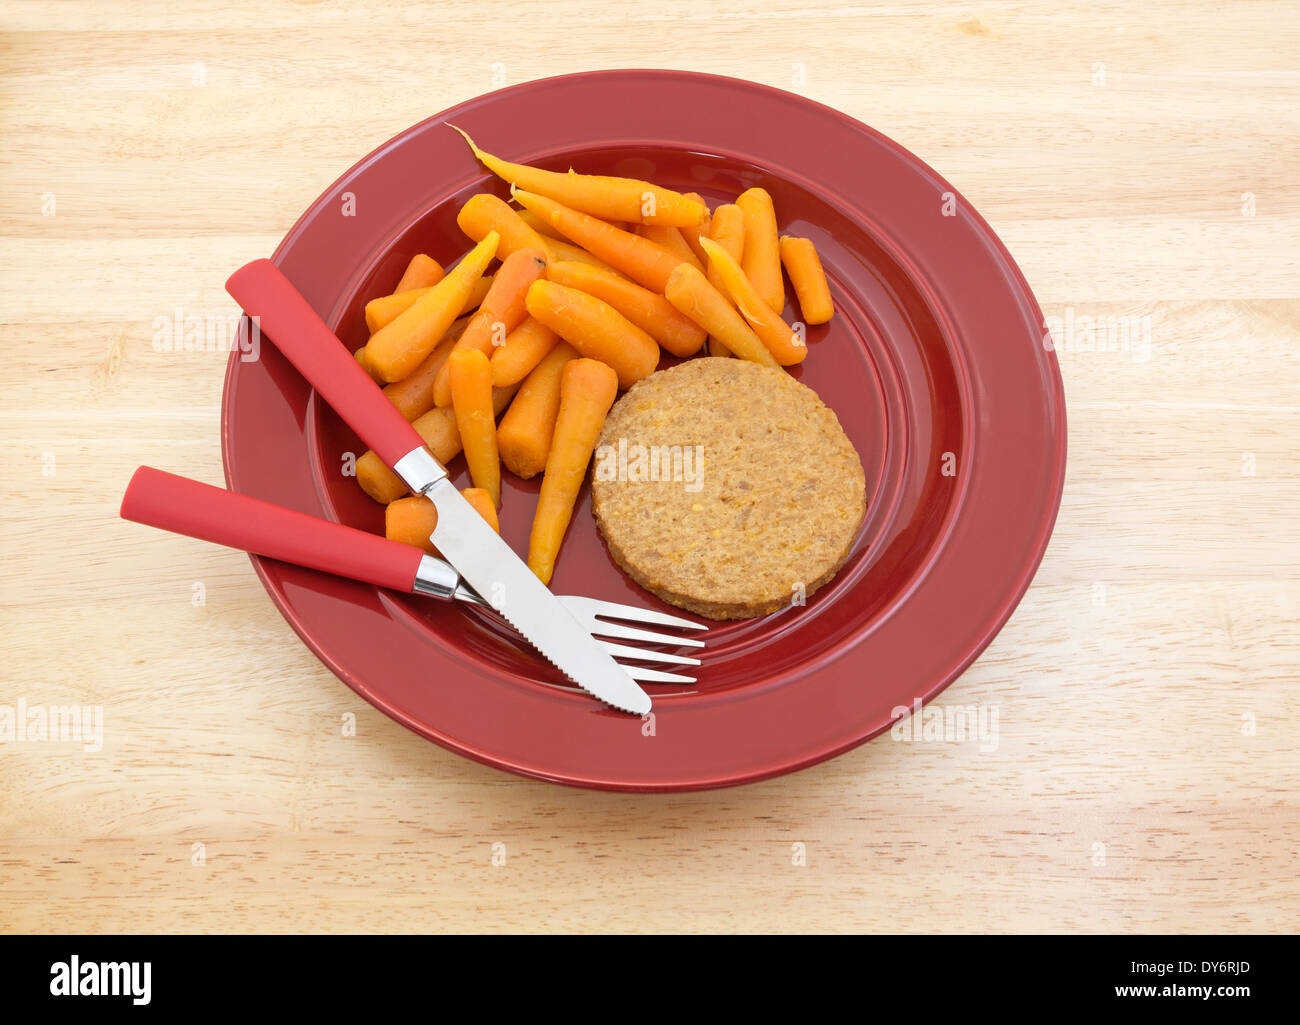 Un régime alimentaire d'un repas vegetable burger avec des carottes sur une plaque rouge avec l'argenterie au sommet d'une table en bois. Banque D'Images